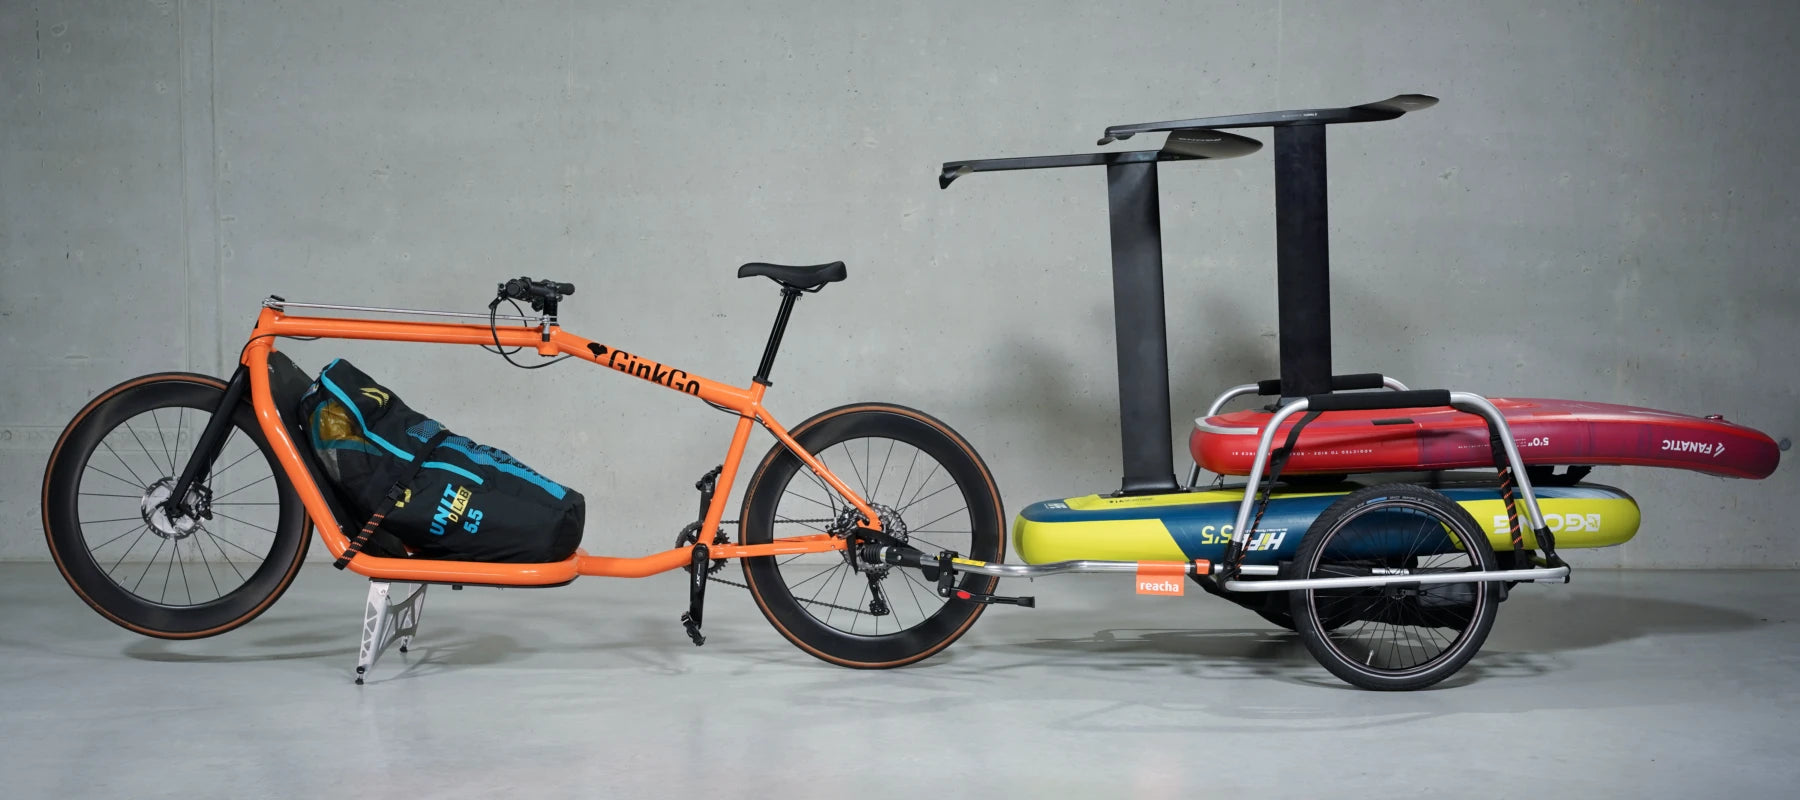 GinkGo cargo bike with cargo bike trailer from reacha